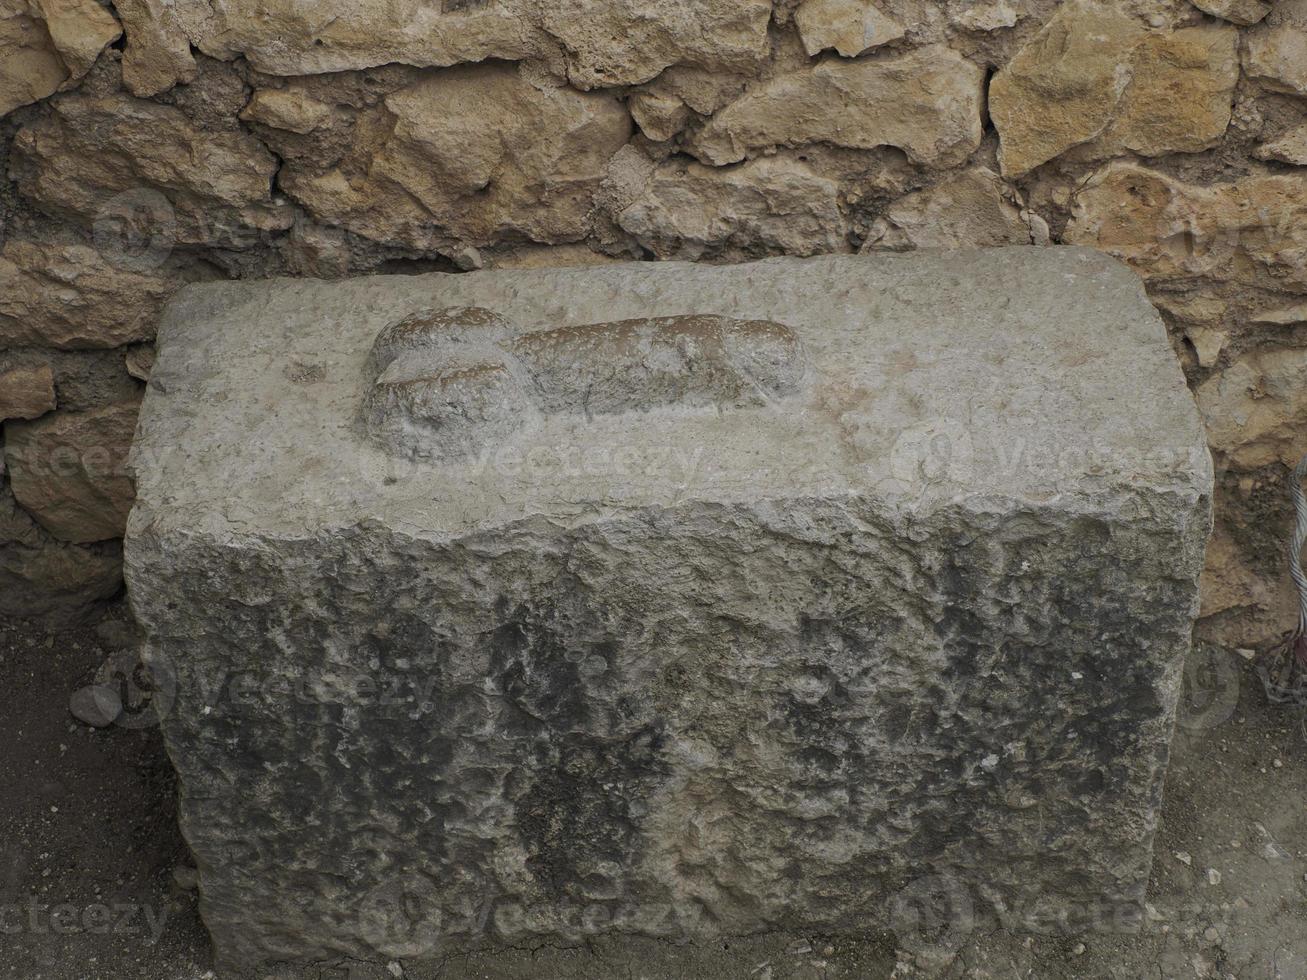 sinal de pênis de bordel em volubilis ruínas romanas em marrocos- ruínas romanas mais bem preservadas localizadas entre as cidades imperiais de fez e meknes foto